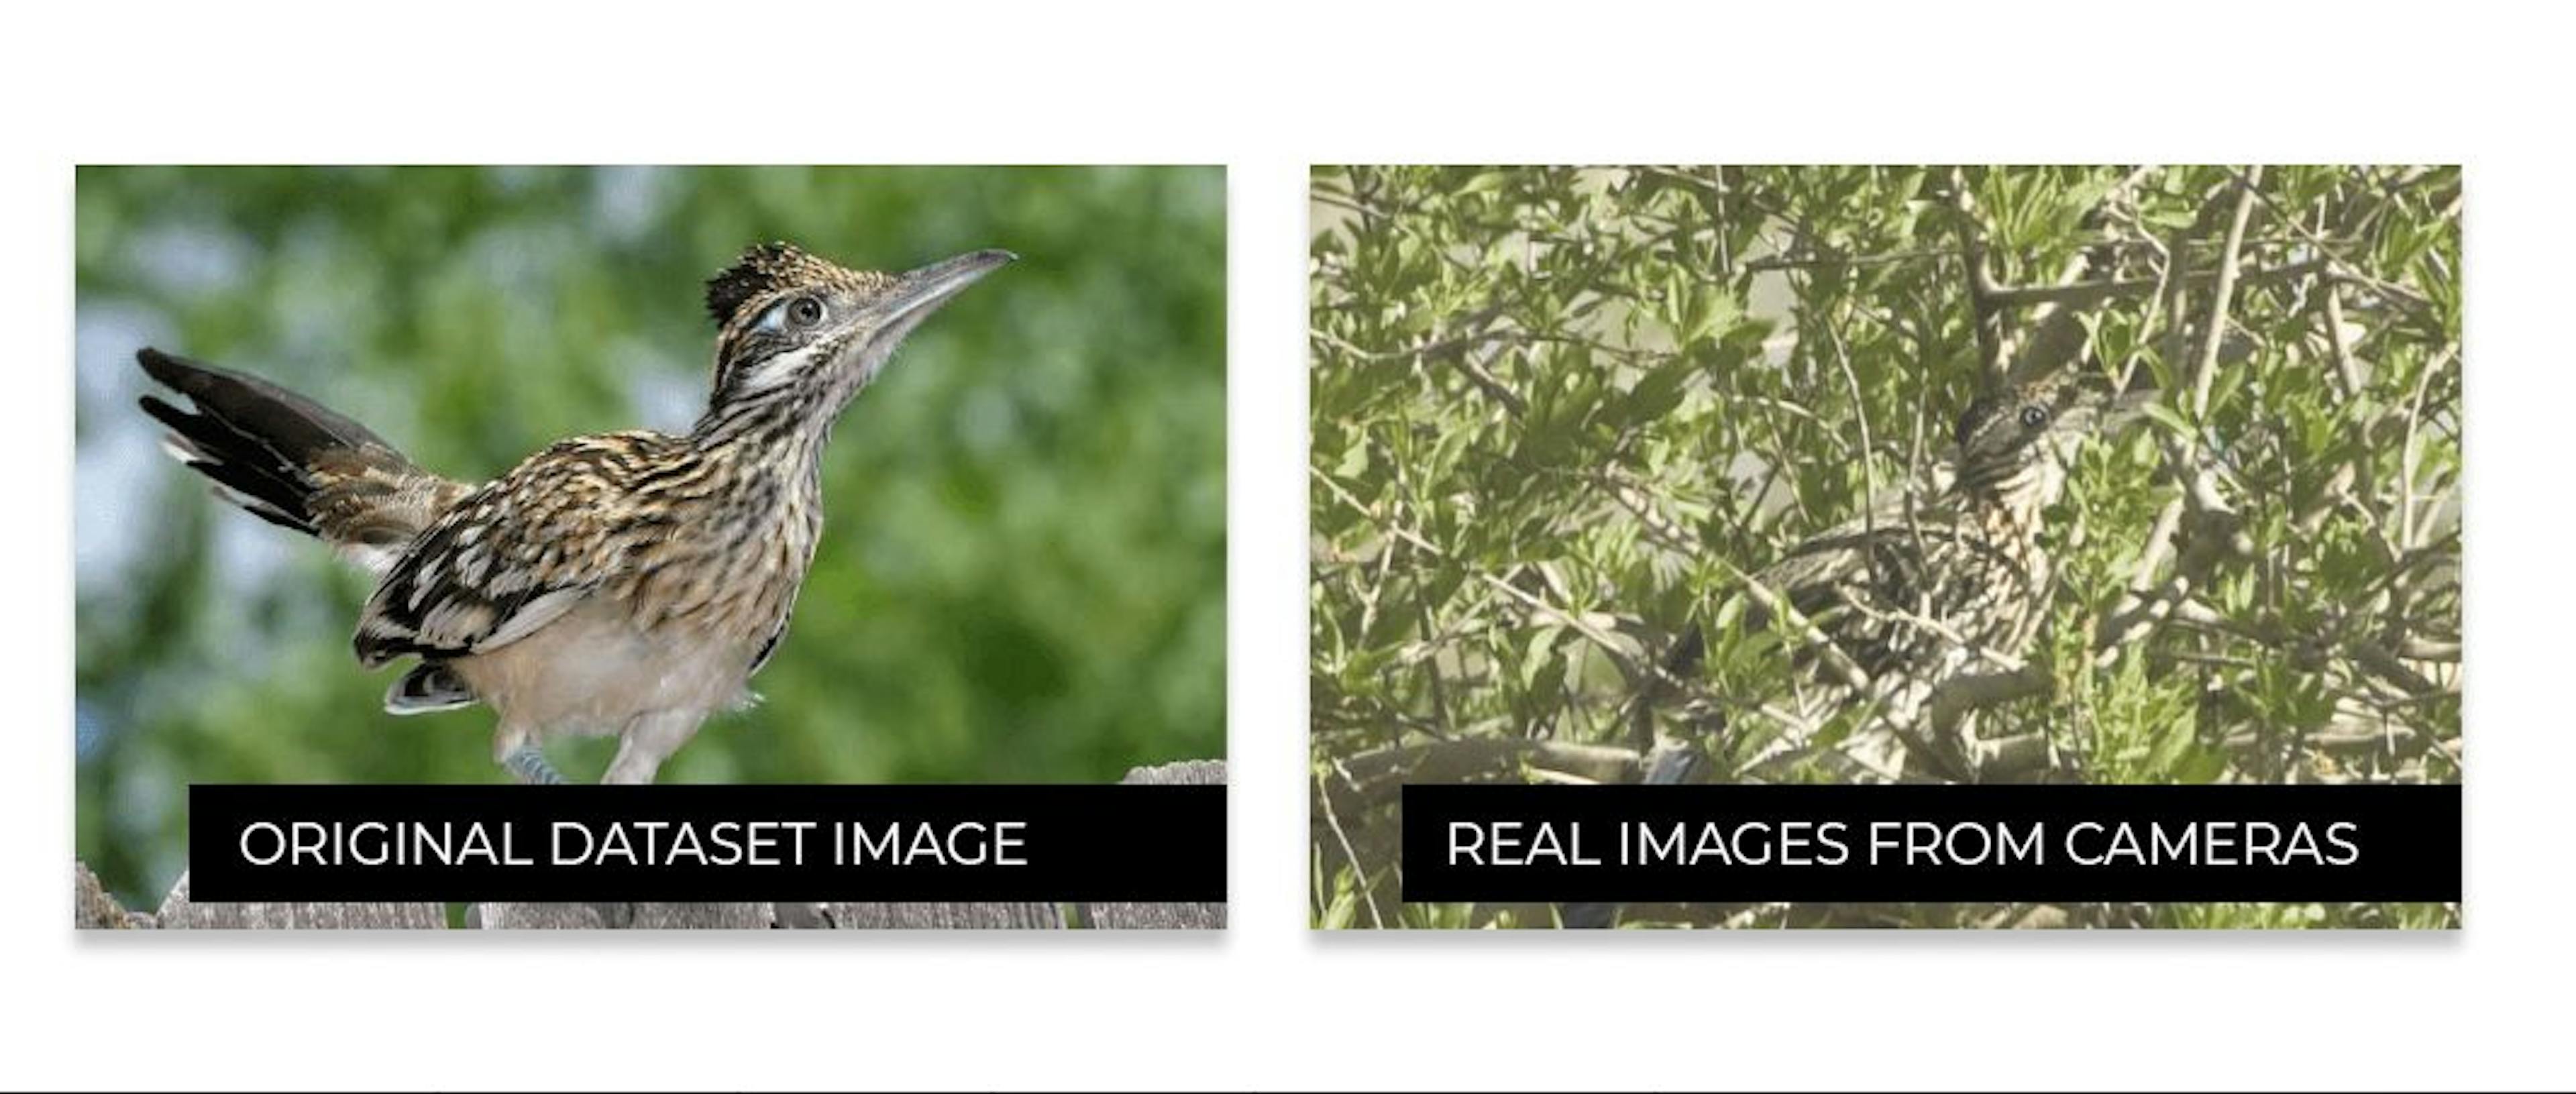 鸟类在互联网上的外观与现实生活中的外观之间的差异